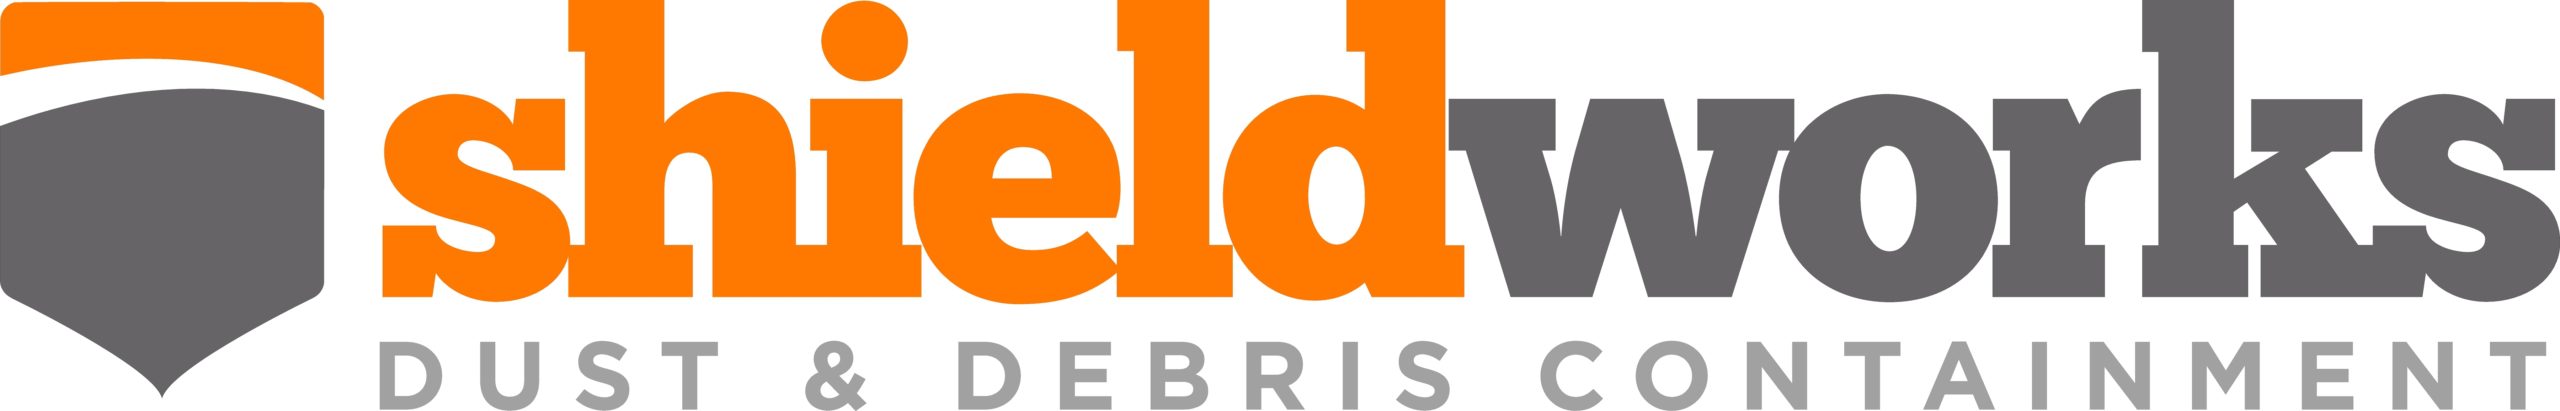 Shieldworks logo